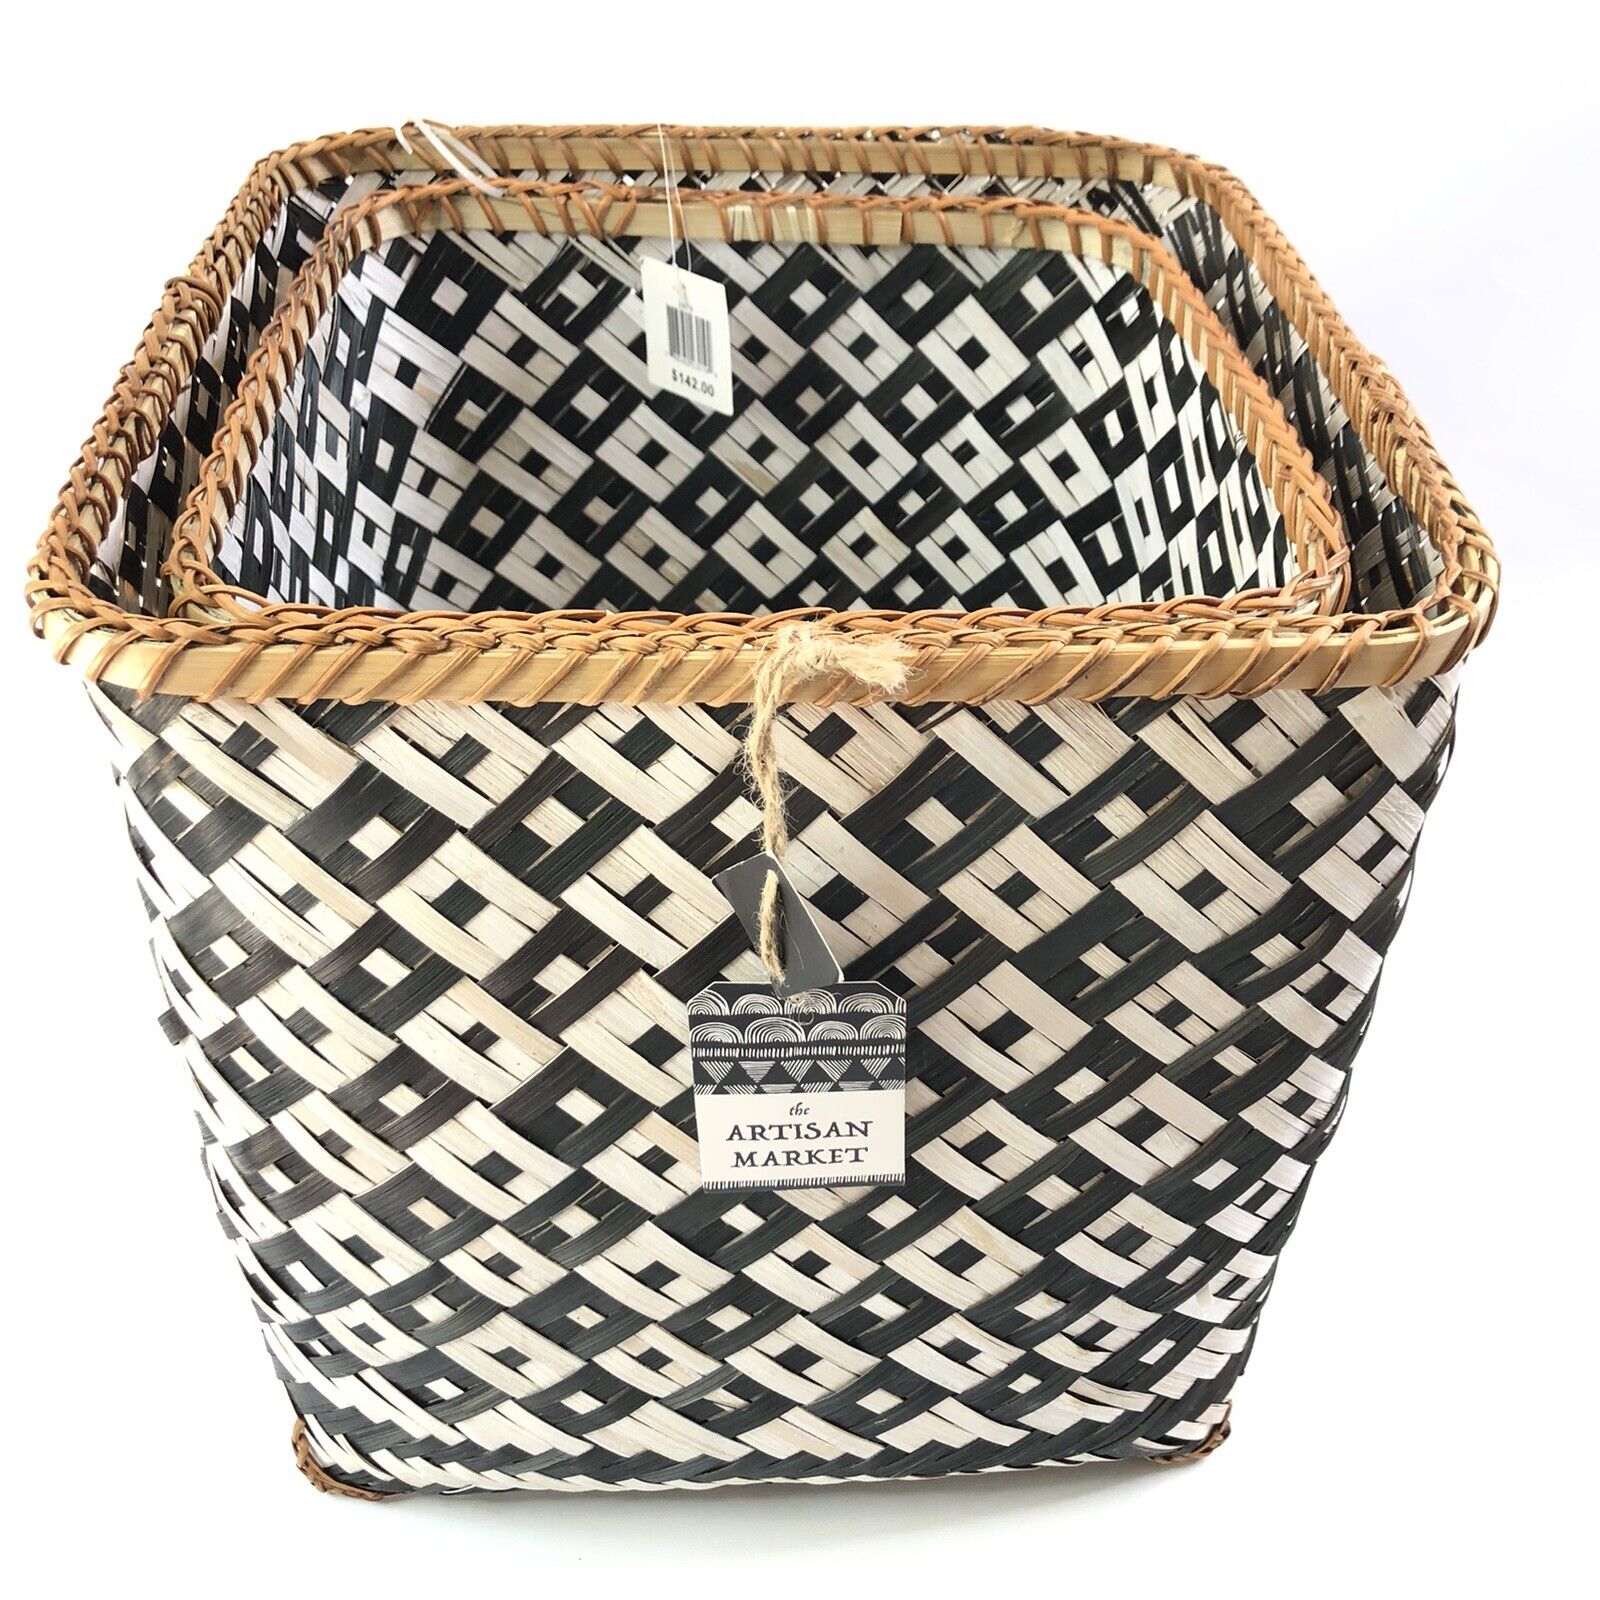 Artisan Market Square Bamboo Baskets Set of 2 Black White Diagonal Weave